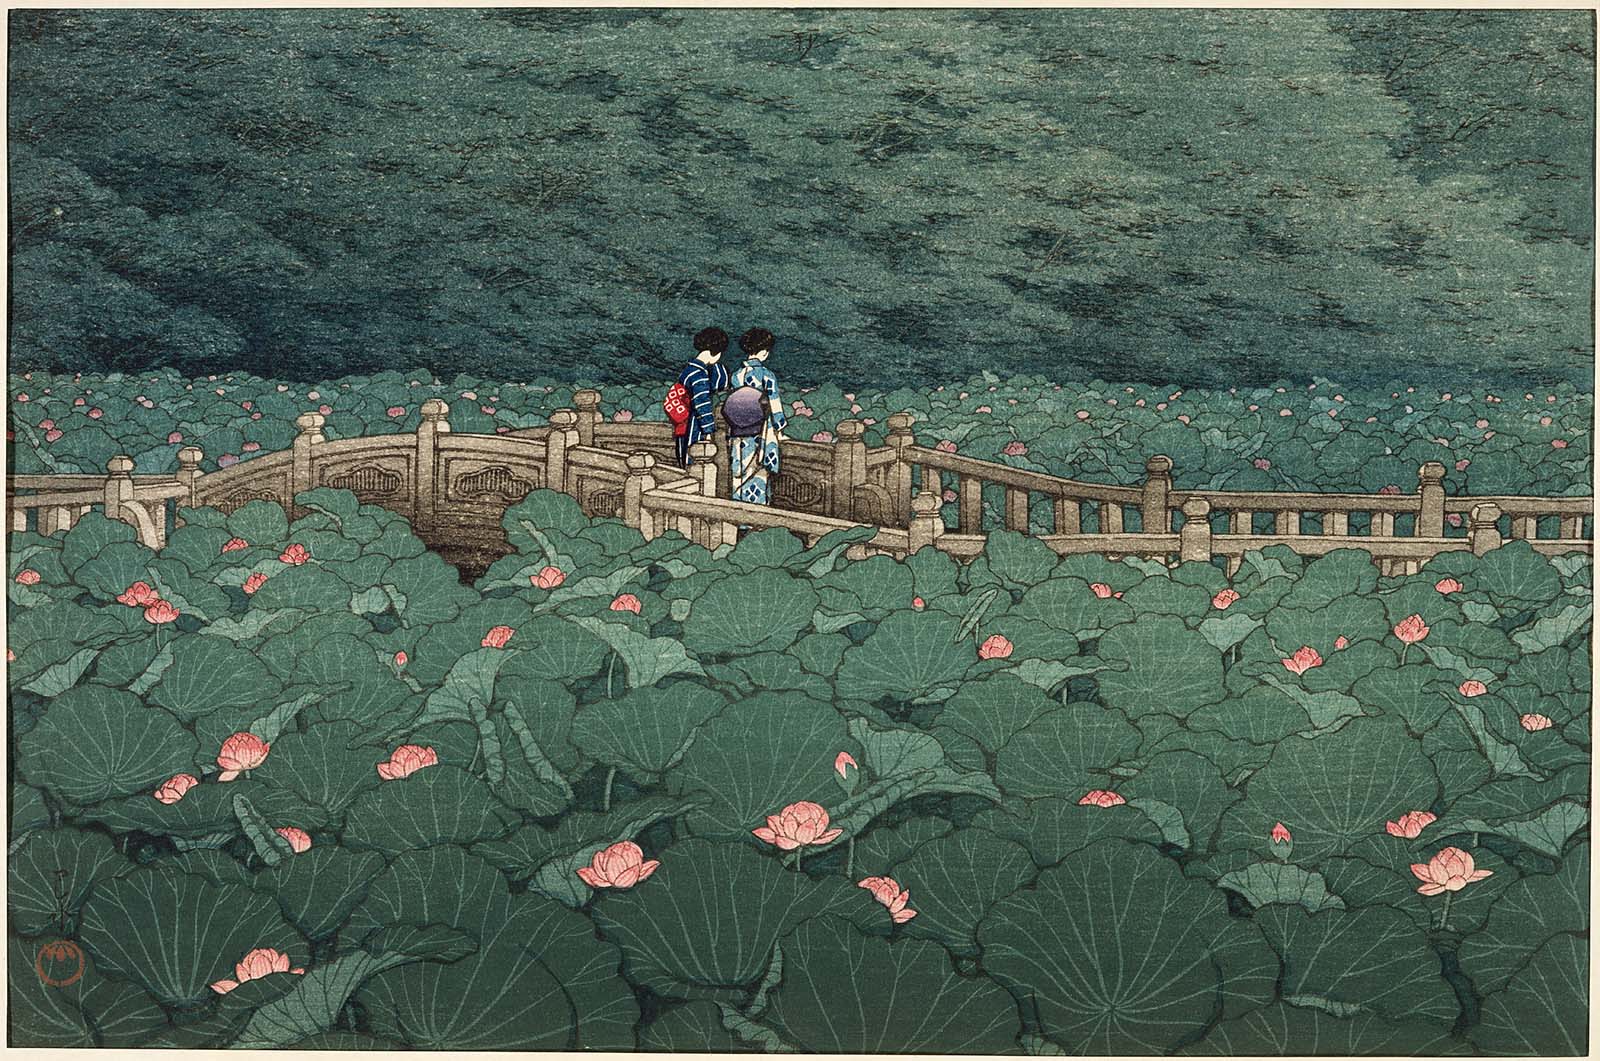 Der Teich beim Benten-Heiligtum in Shiba by Hasui Kawase - 1929 - 27.3 x 39.8 cm Museum of Fine Arts Boston